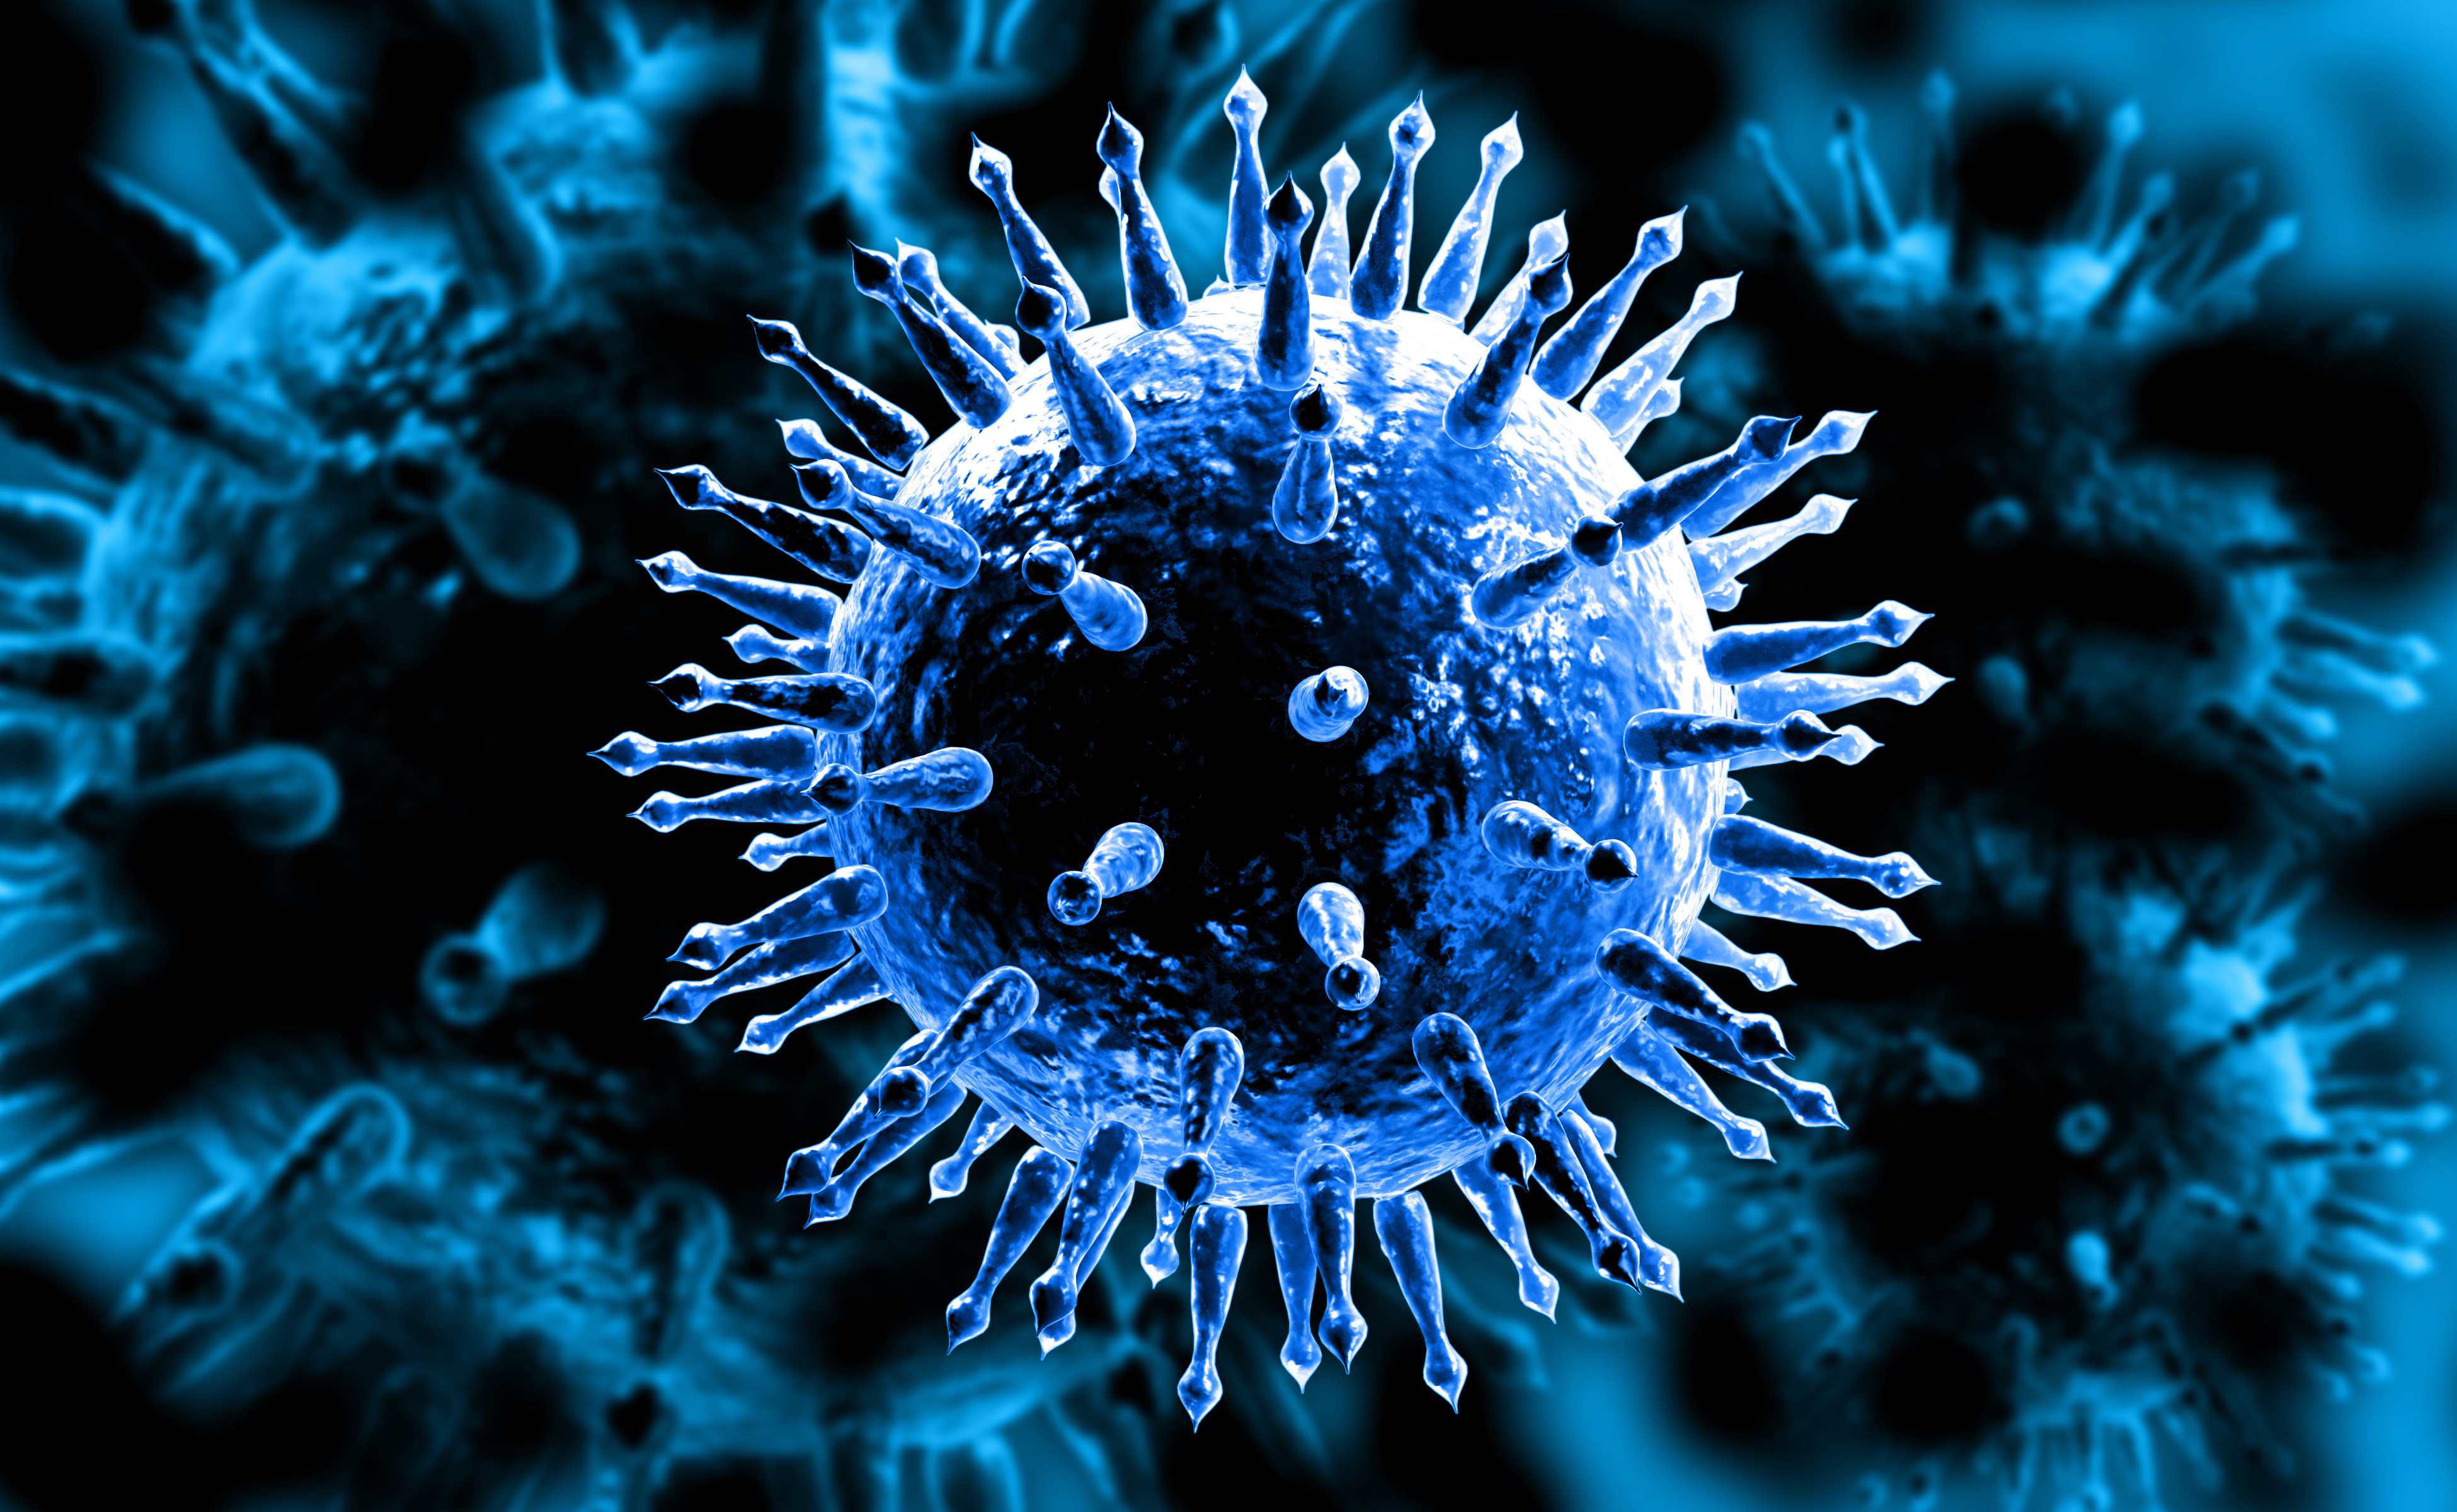 Image of the influenza virus